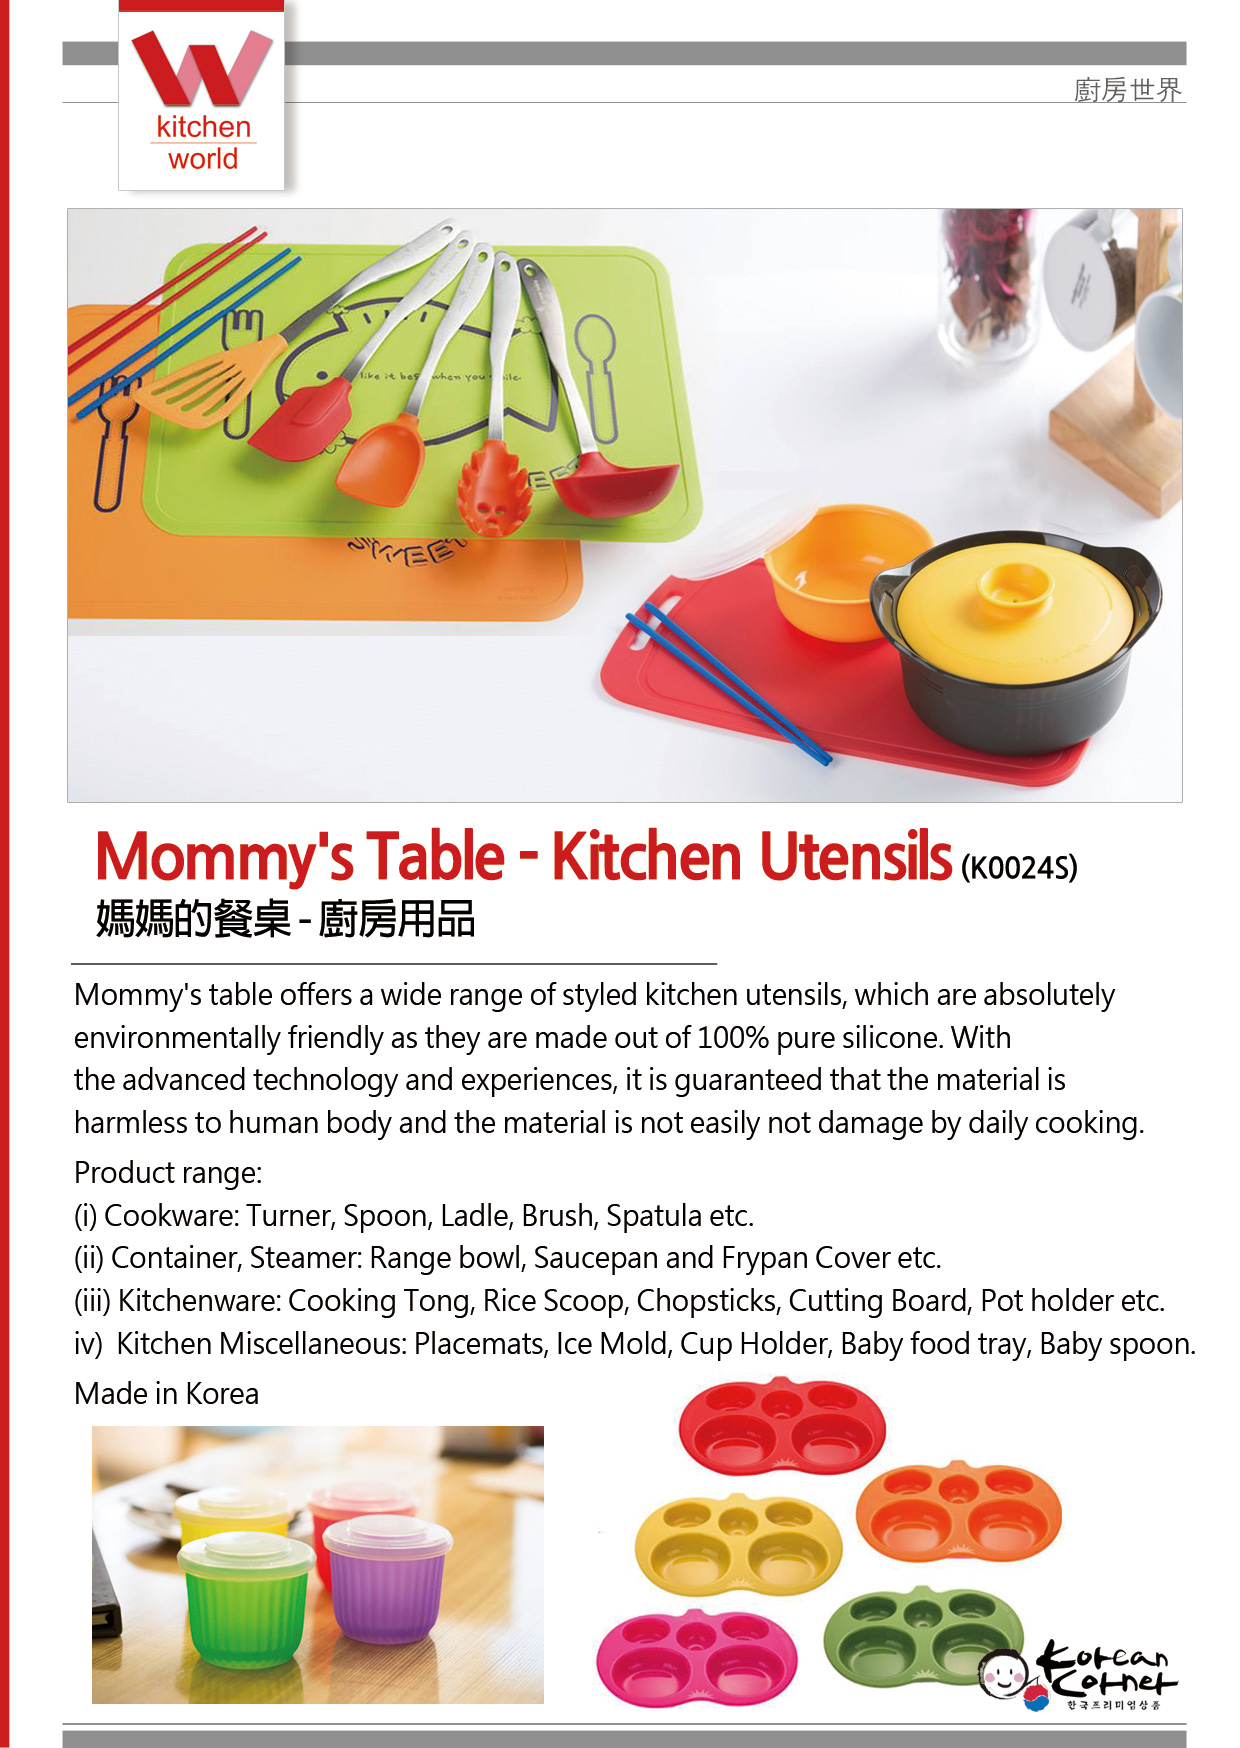 https://www.koreancorner.co.kr/wp-content/uploads/2018/06/Mommys-Table-Kitchen-Utensils_e.jpg